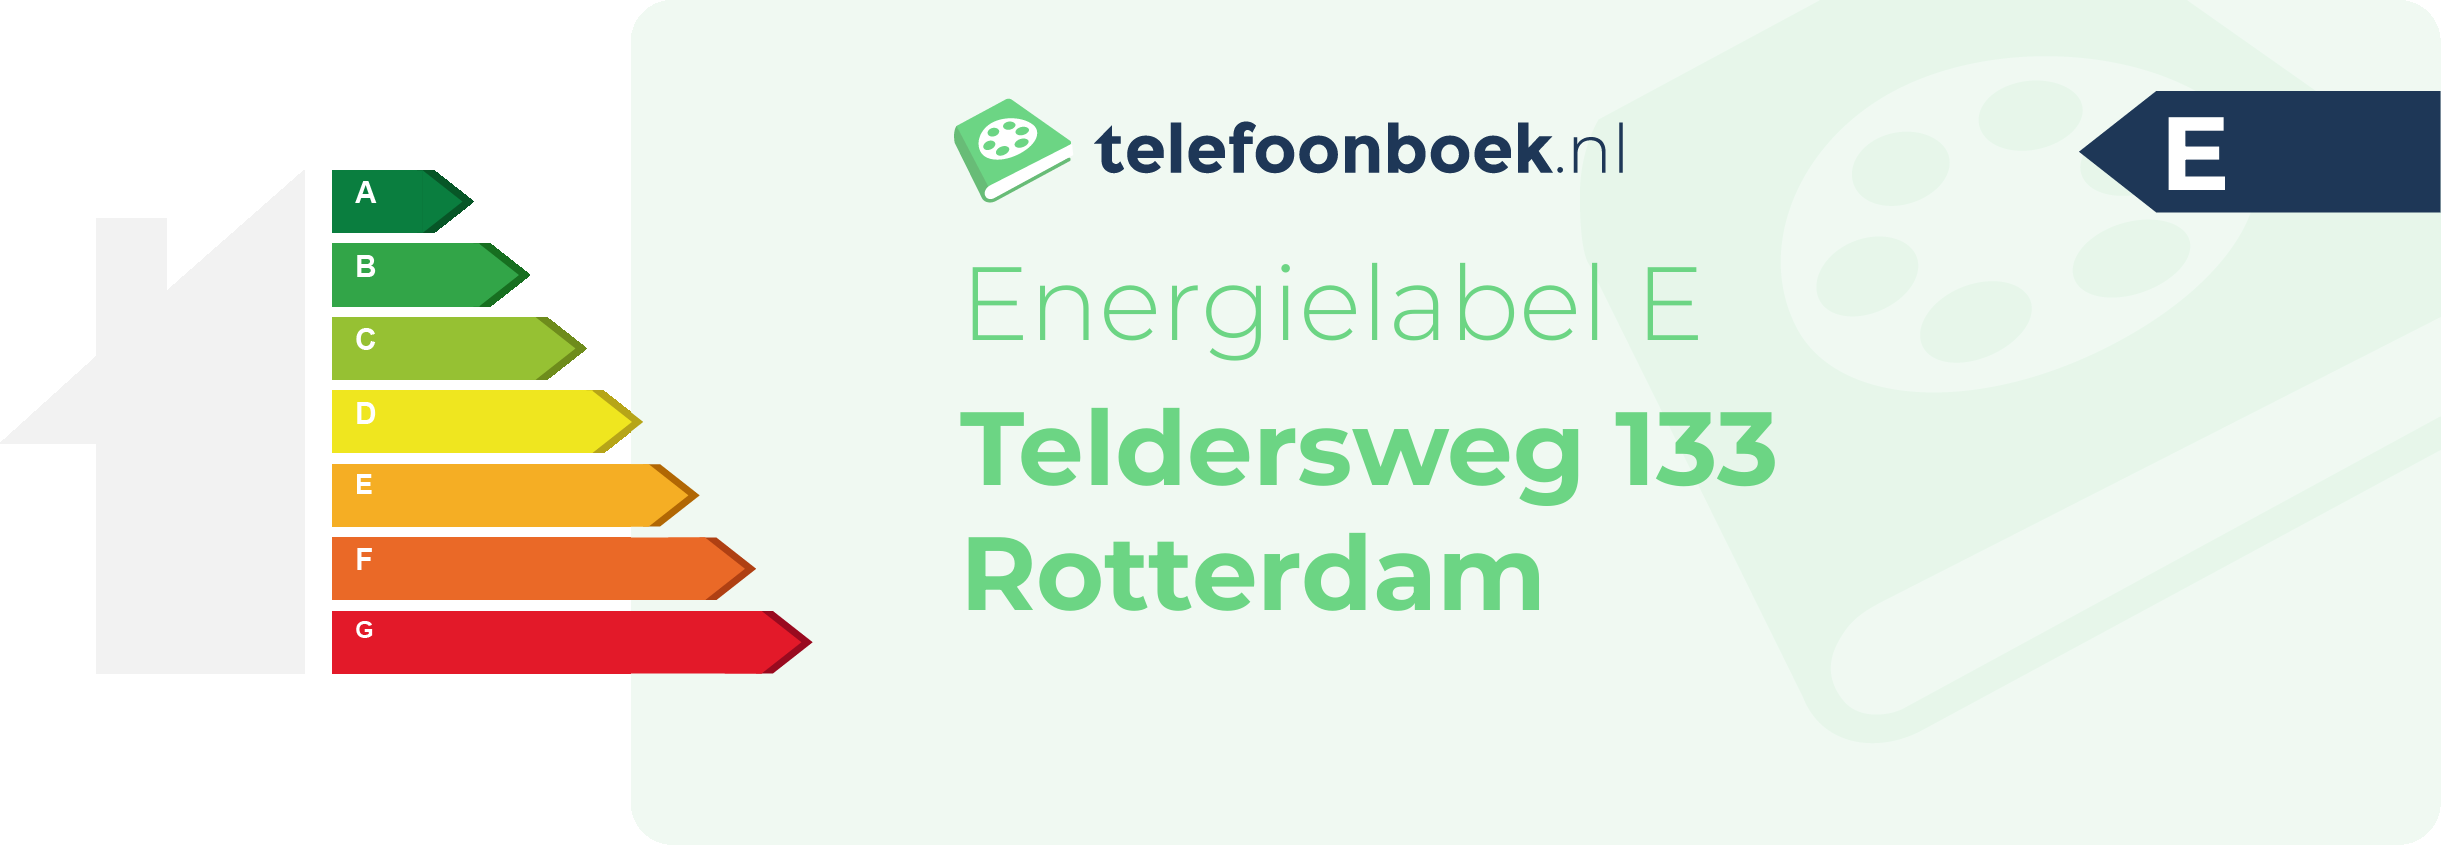 Energielabel Teldersweg 133 Rotterdam